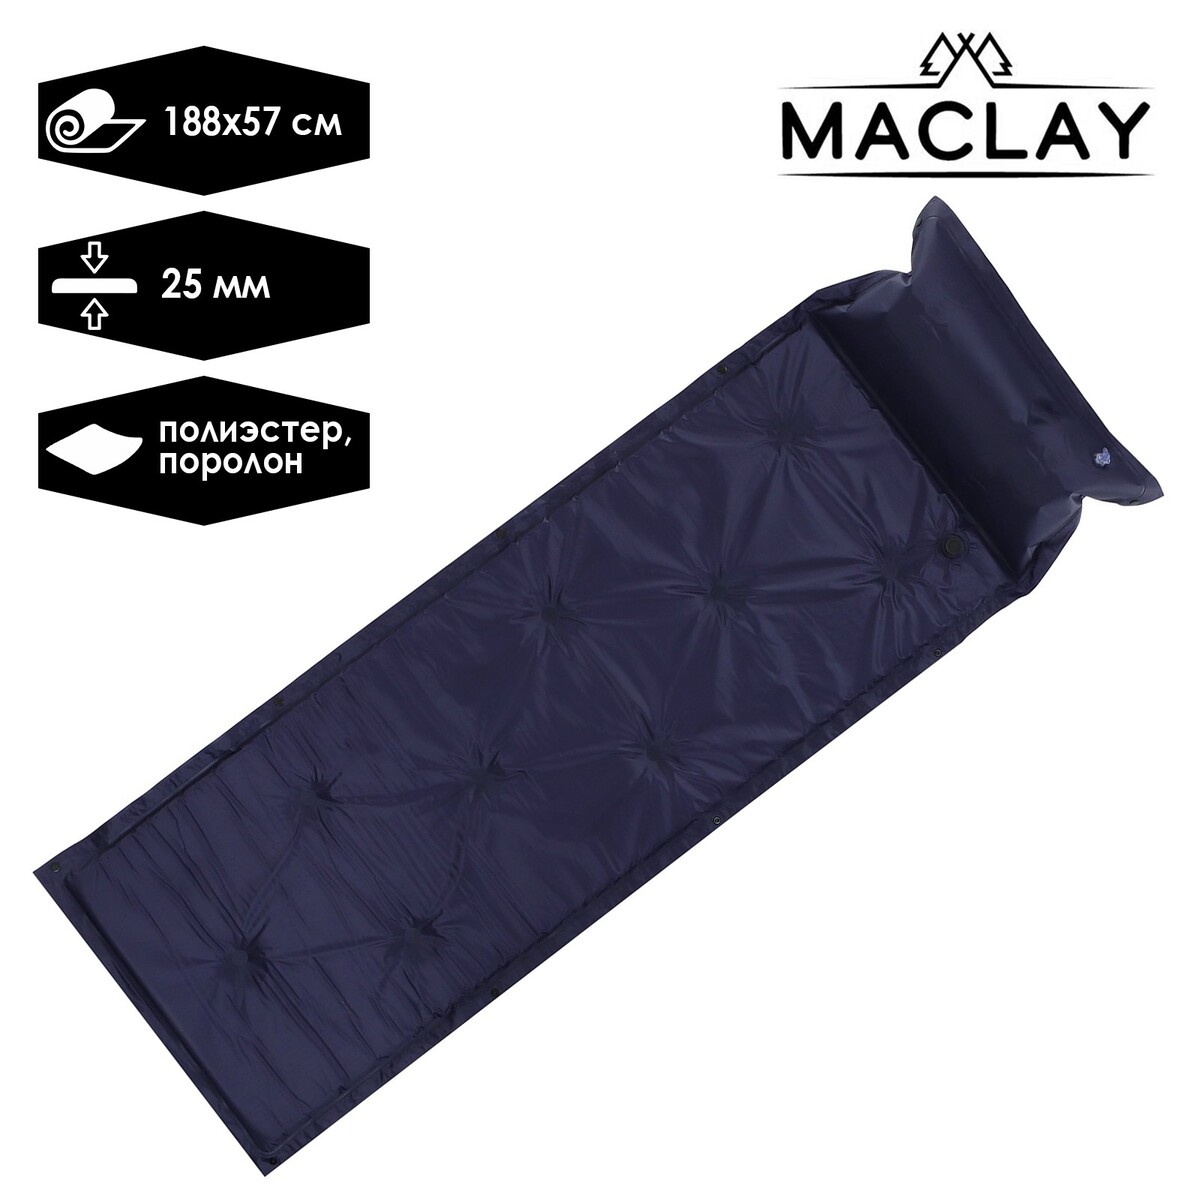 Коврик туристический maclay, 188х57х2.5 см, цвет синий коврик для йоги inex yoga mat in rp ym35 bl 35 rp 170x60x0 35 синий